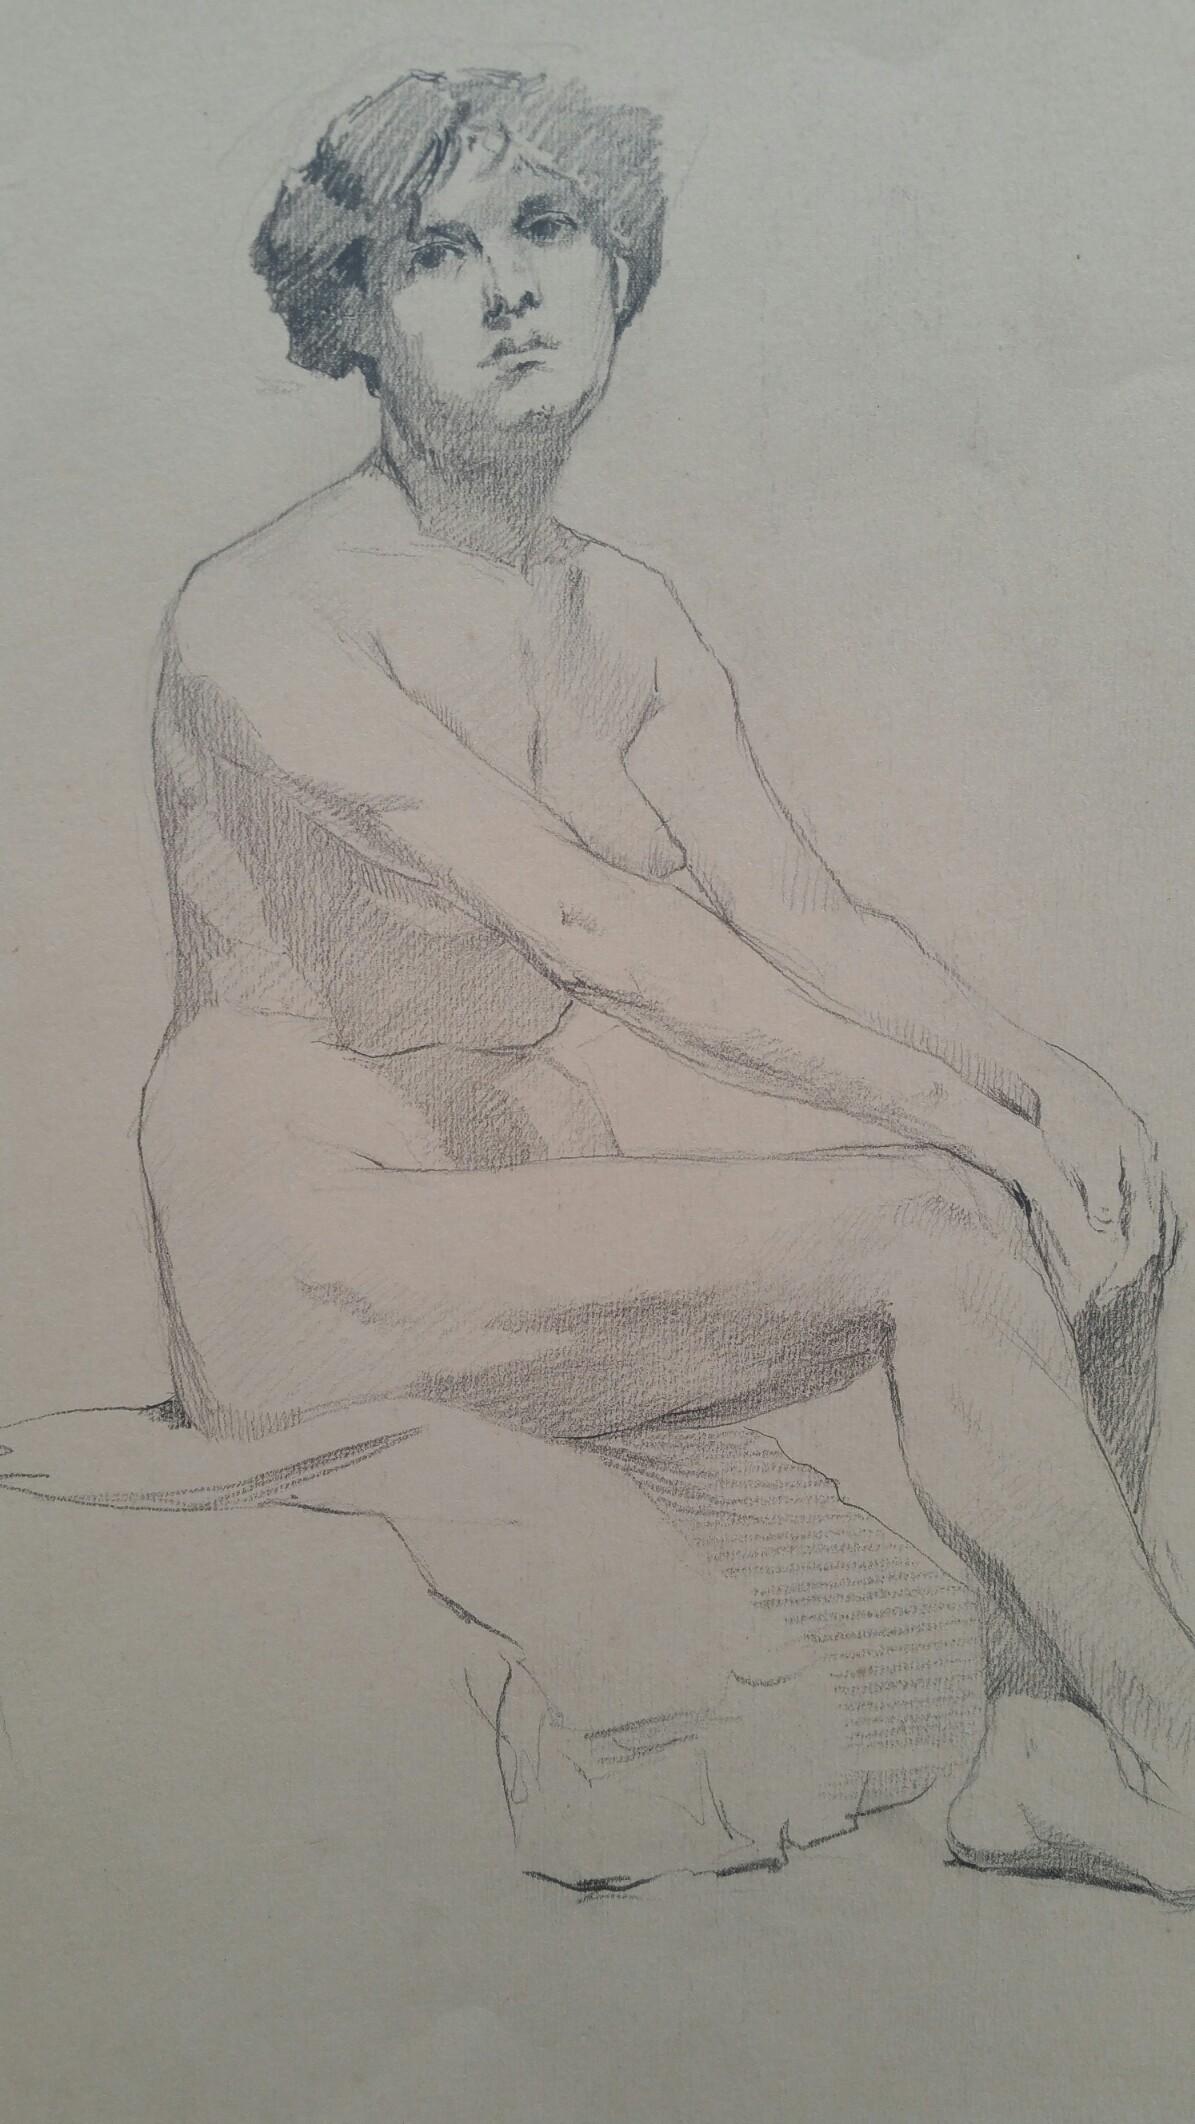 Croquis de portrait en graphite anglais d'une femme nue assis de profil